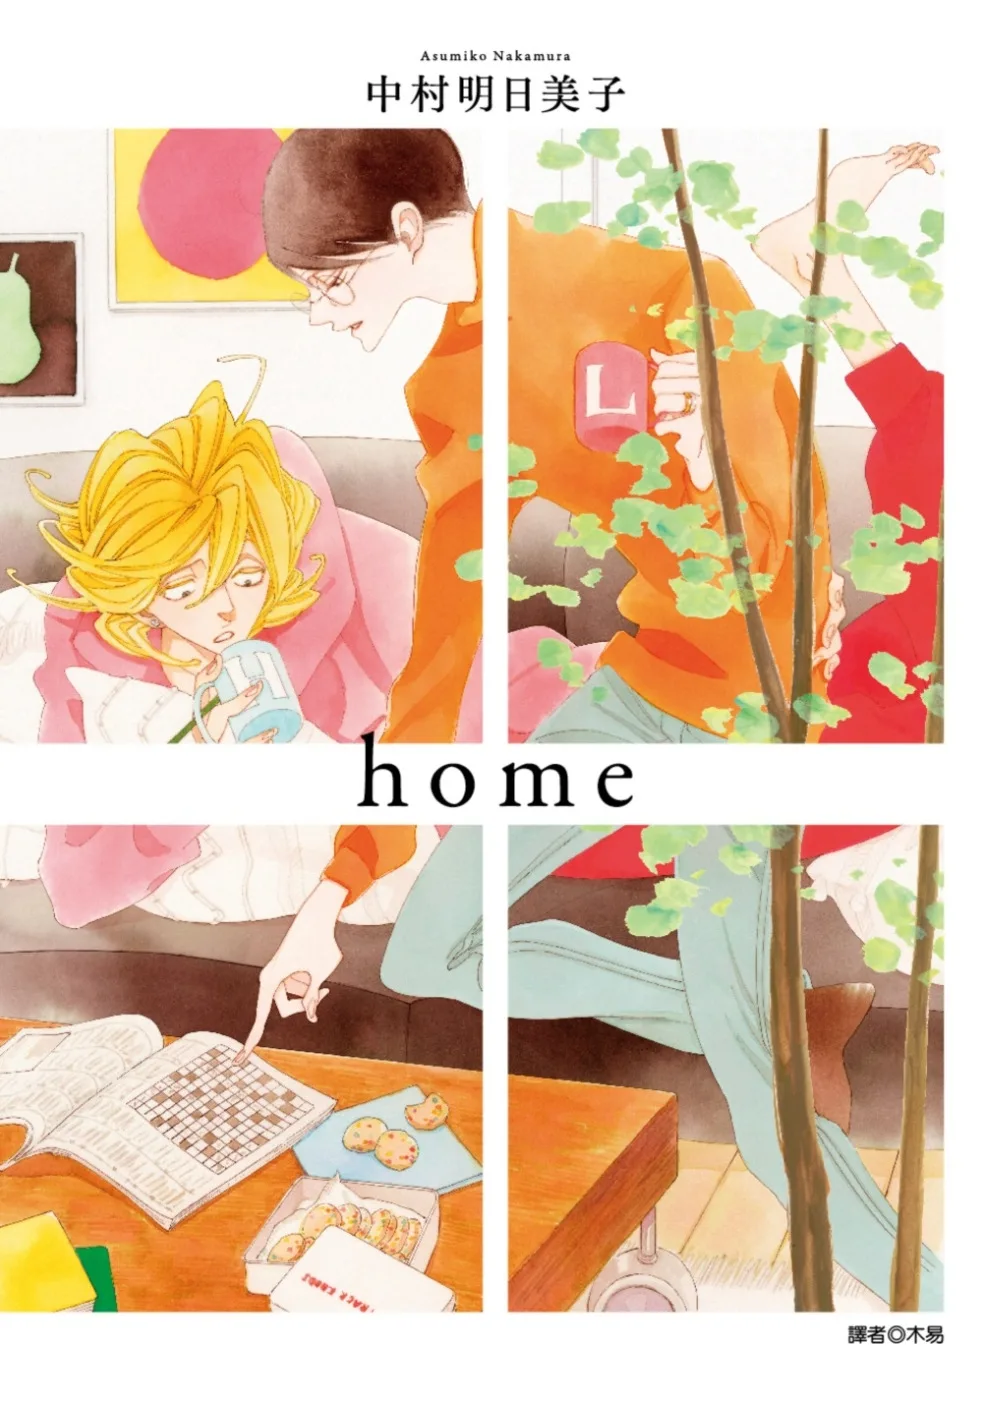 home(全)特裝版